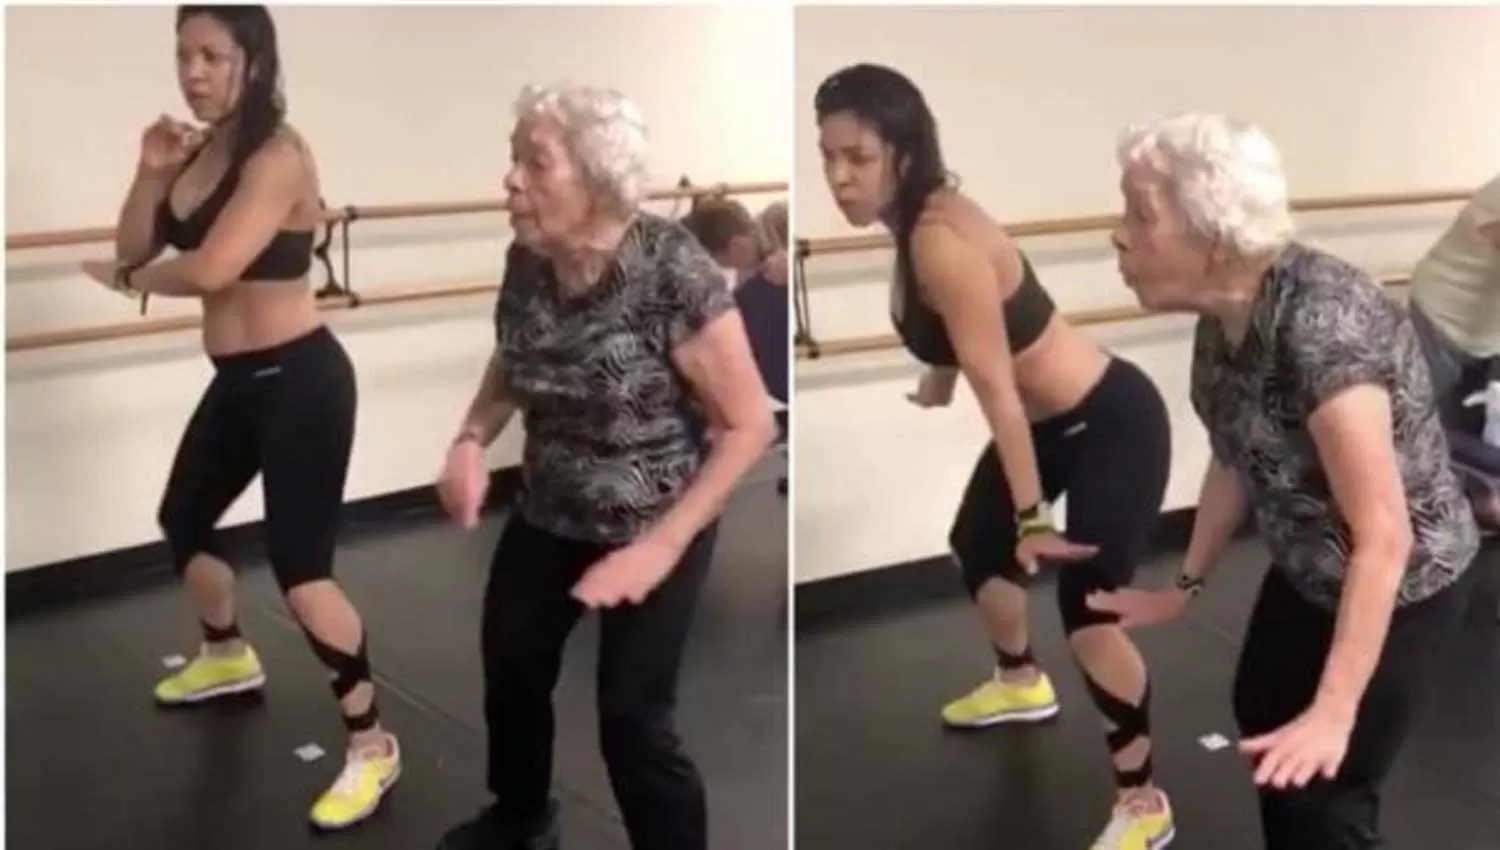 INCREÍBLE. .La señora de 90 años junto a su entrenadora bailando Dura .CAPTURA DE VIDEO.